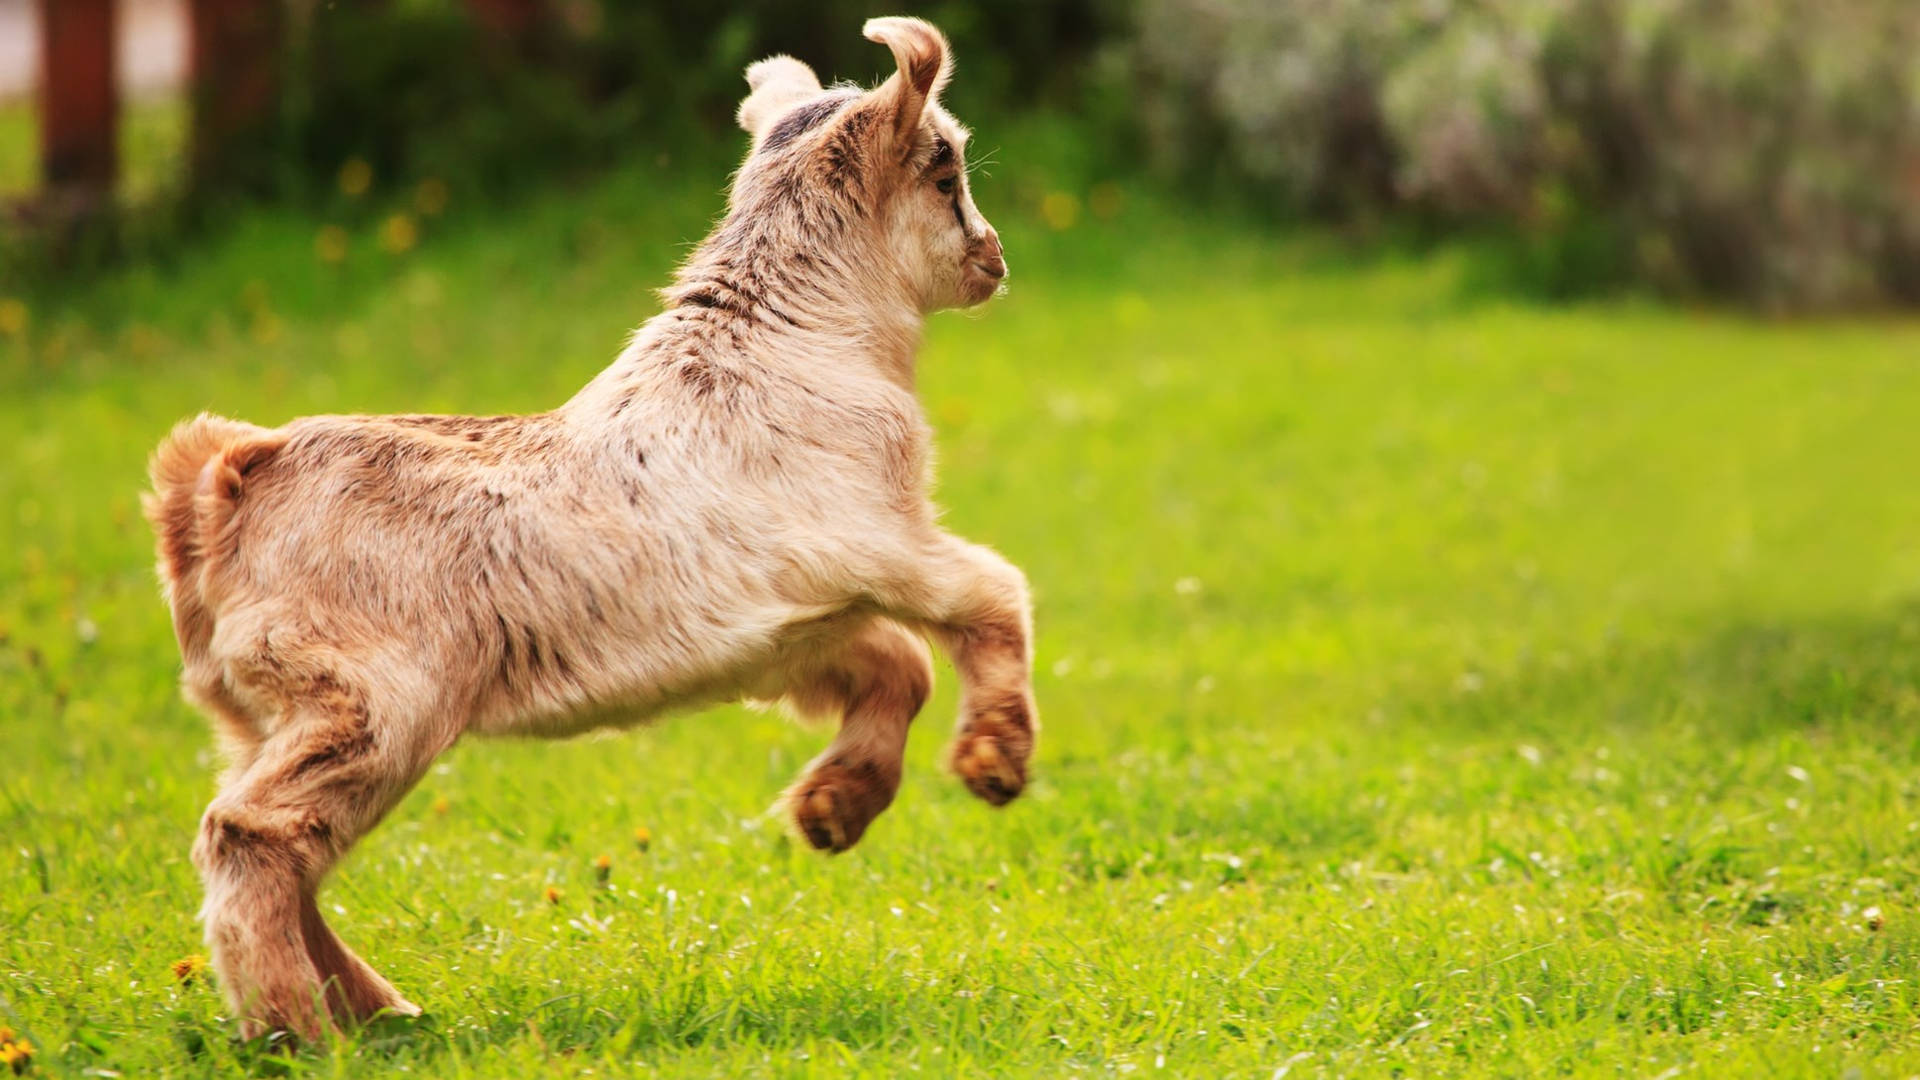 Hopping Baby Goat On Grass Wallpaper